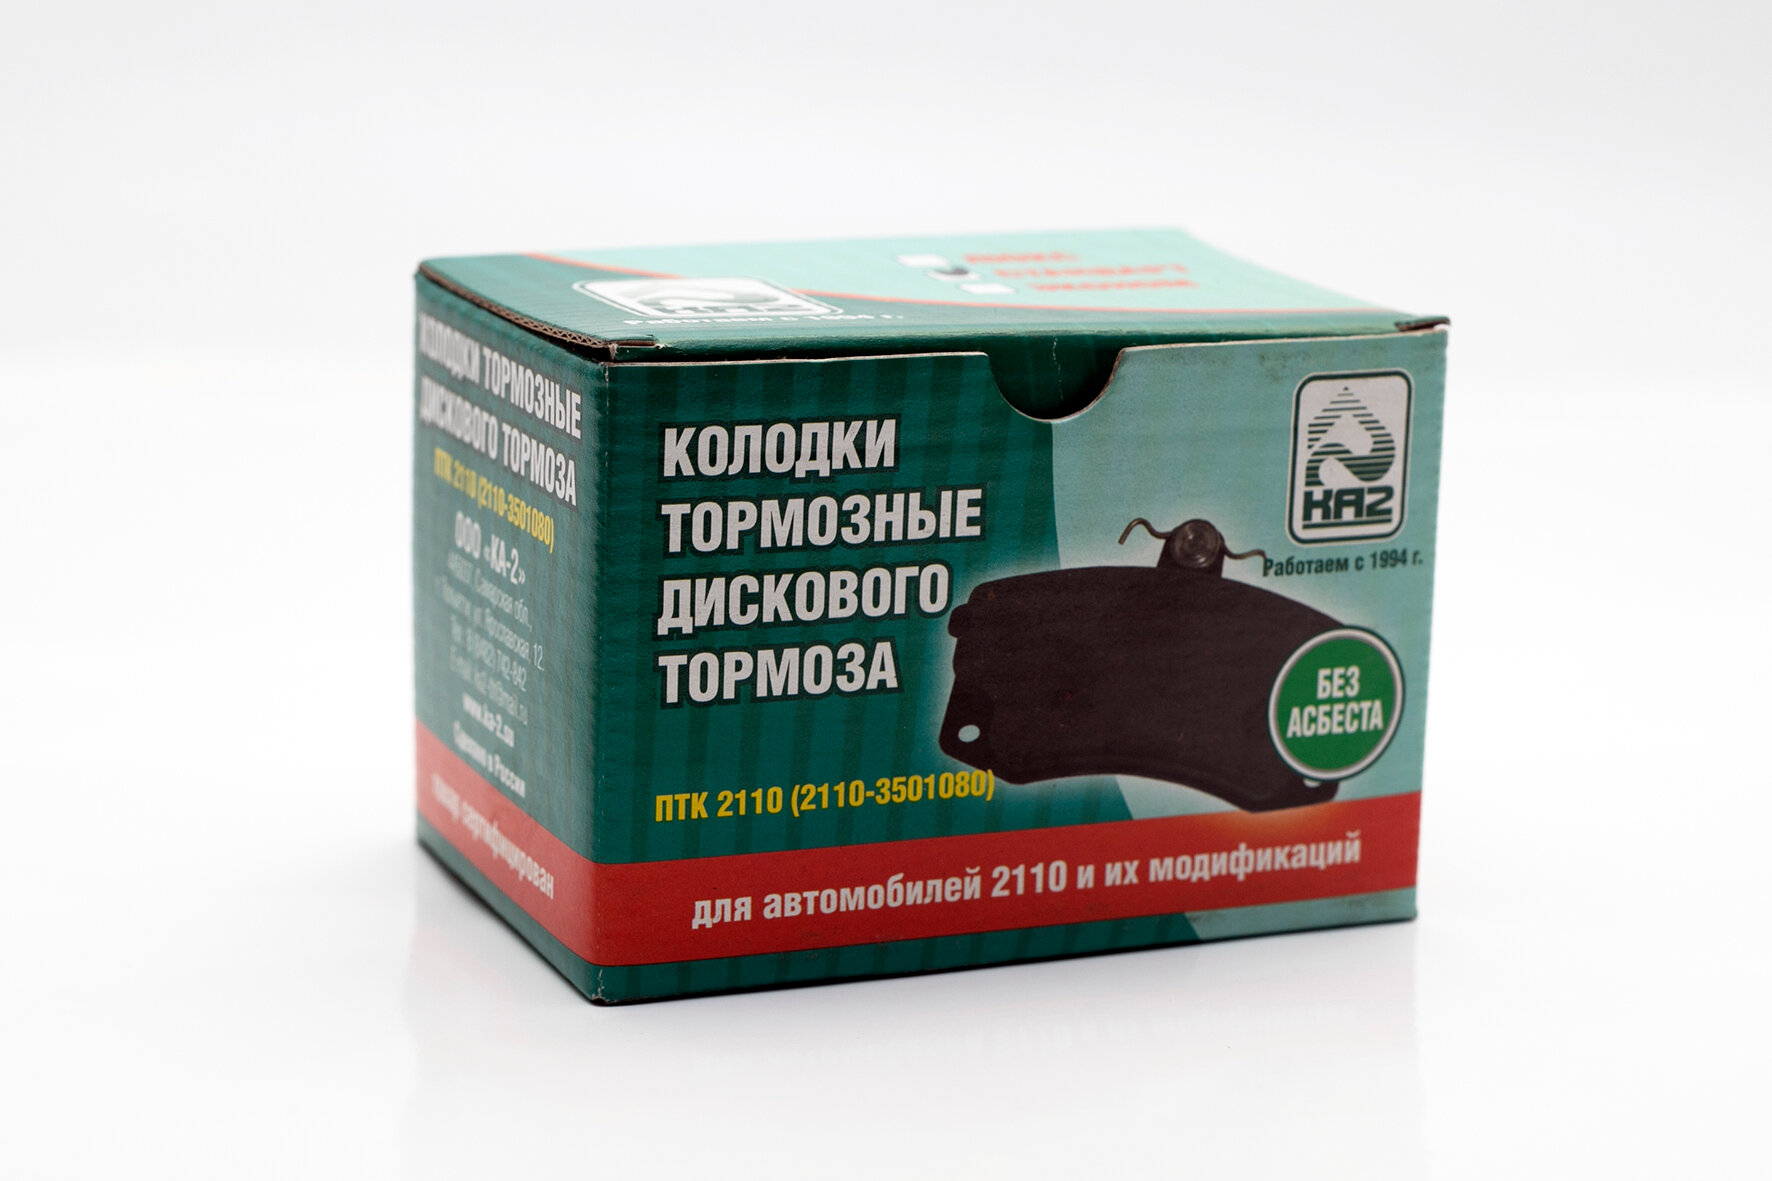 Тормозные колодки КА2 для ВАЗ 2110-2112/Гранта/Приора/Калина / 2110-3501080 – от Производителя